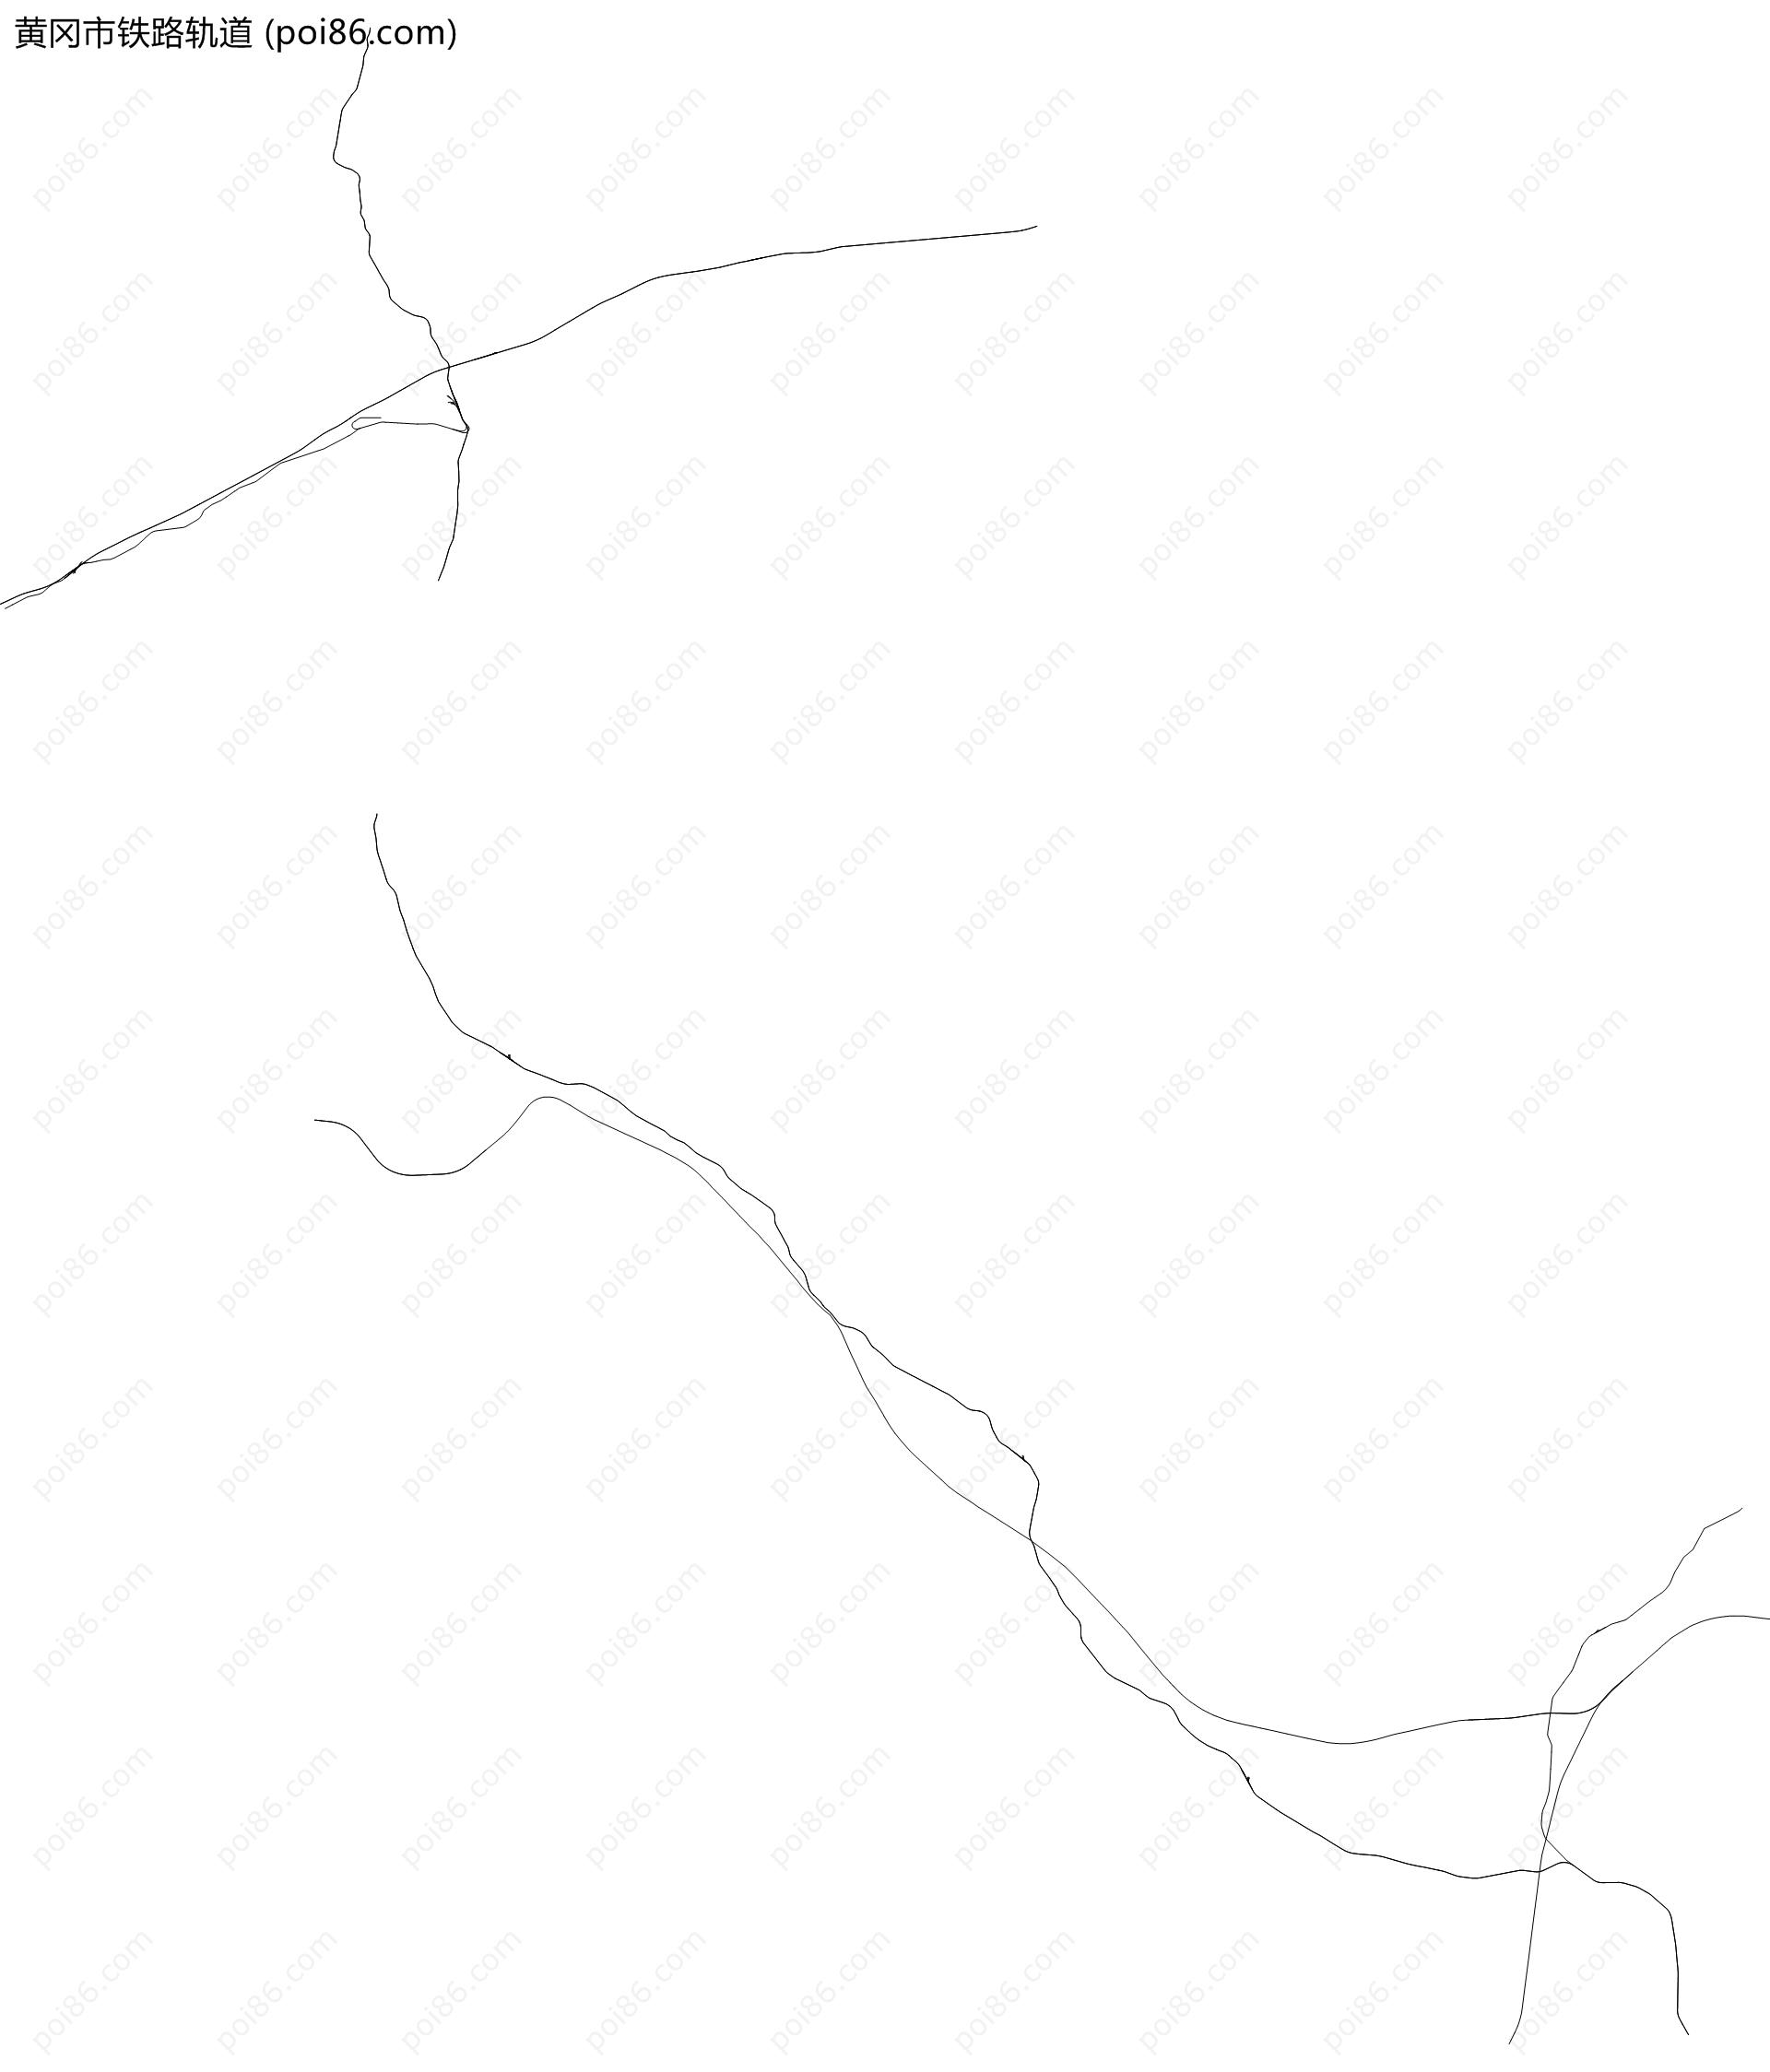 黄冈市铁路轨道地图